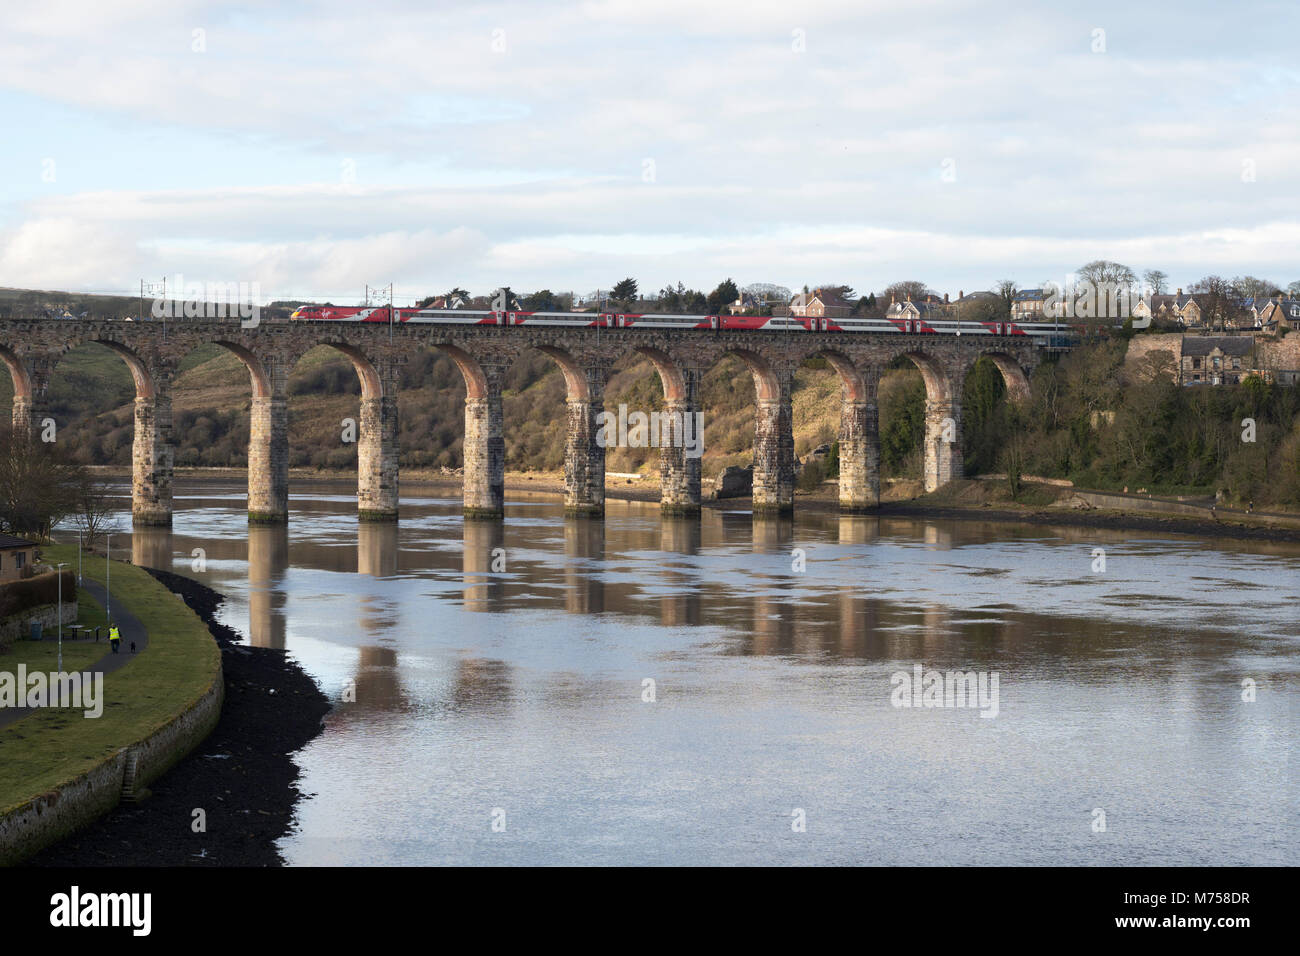 Virgin Express tren eléctrico pasajero pasando sobre el puente fronterizo real, de Berwick upon Tweed, Northumberland, Inglaterra, Reino Unido. Foto de stock